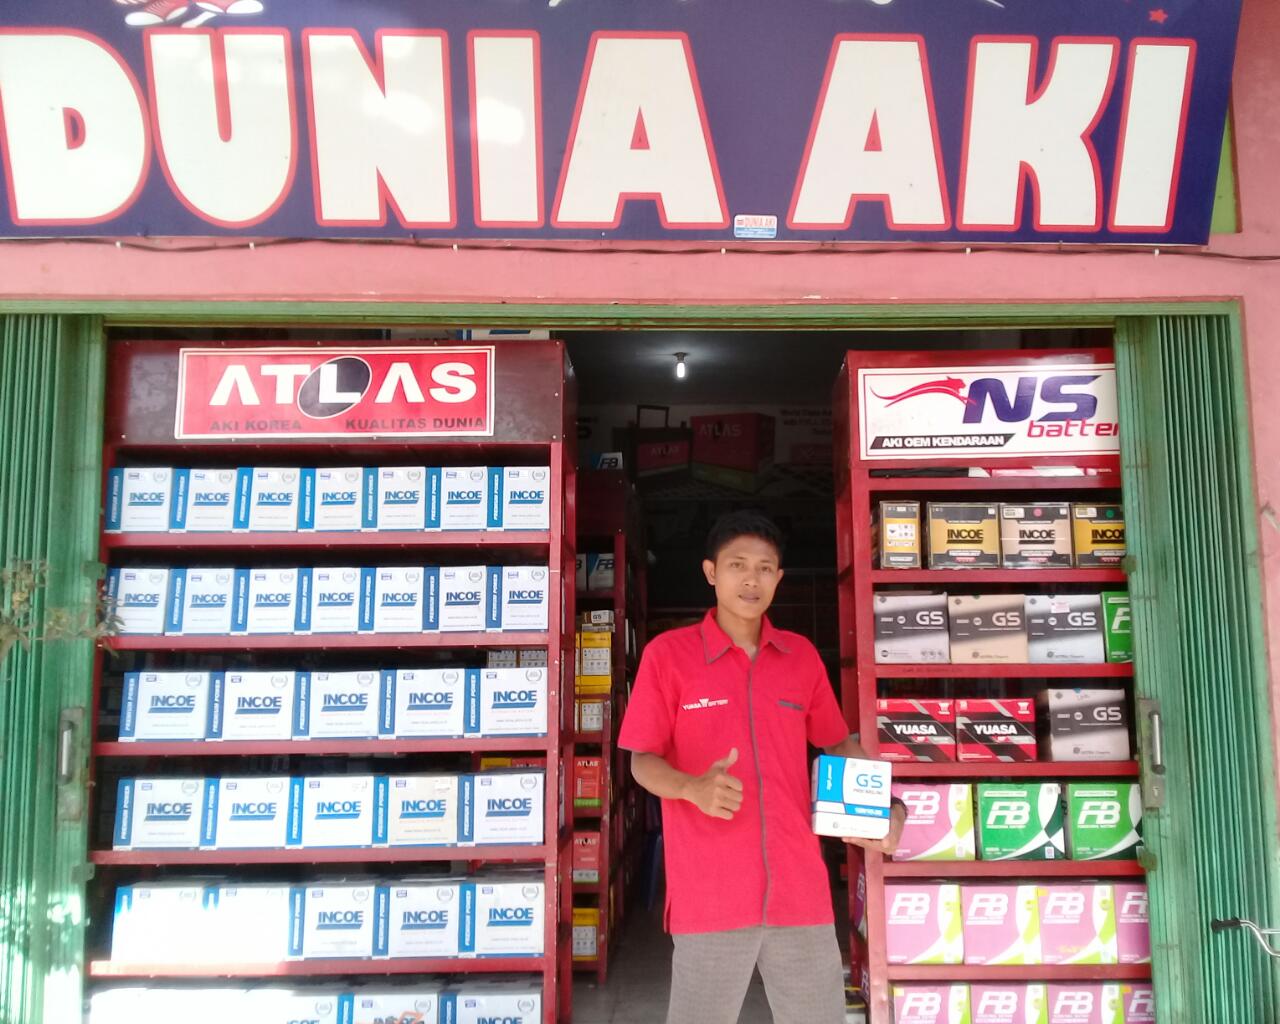 Dunia Aki, Pusat Penjualan Aki Terlengkap di Kota Bengkulu